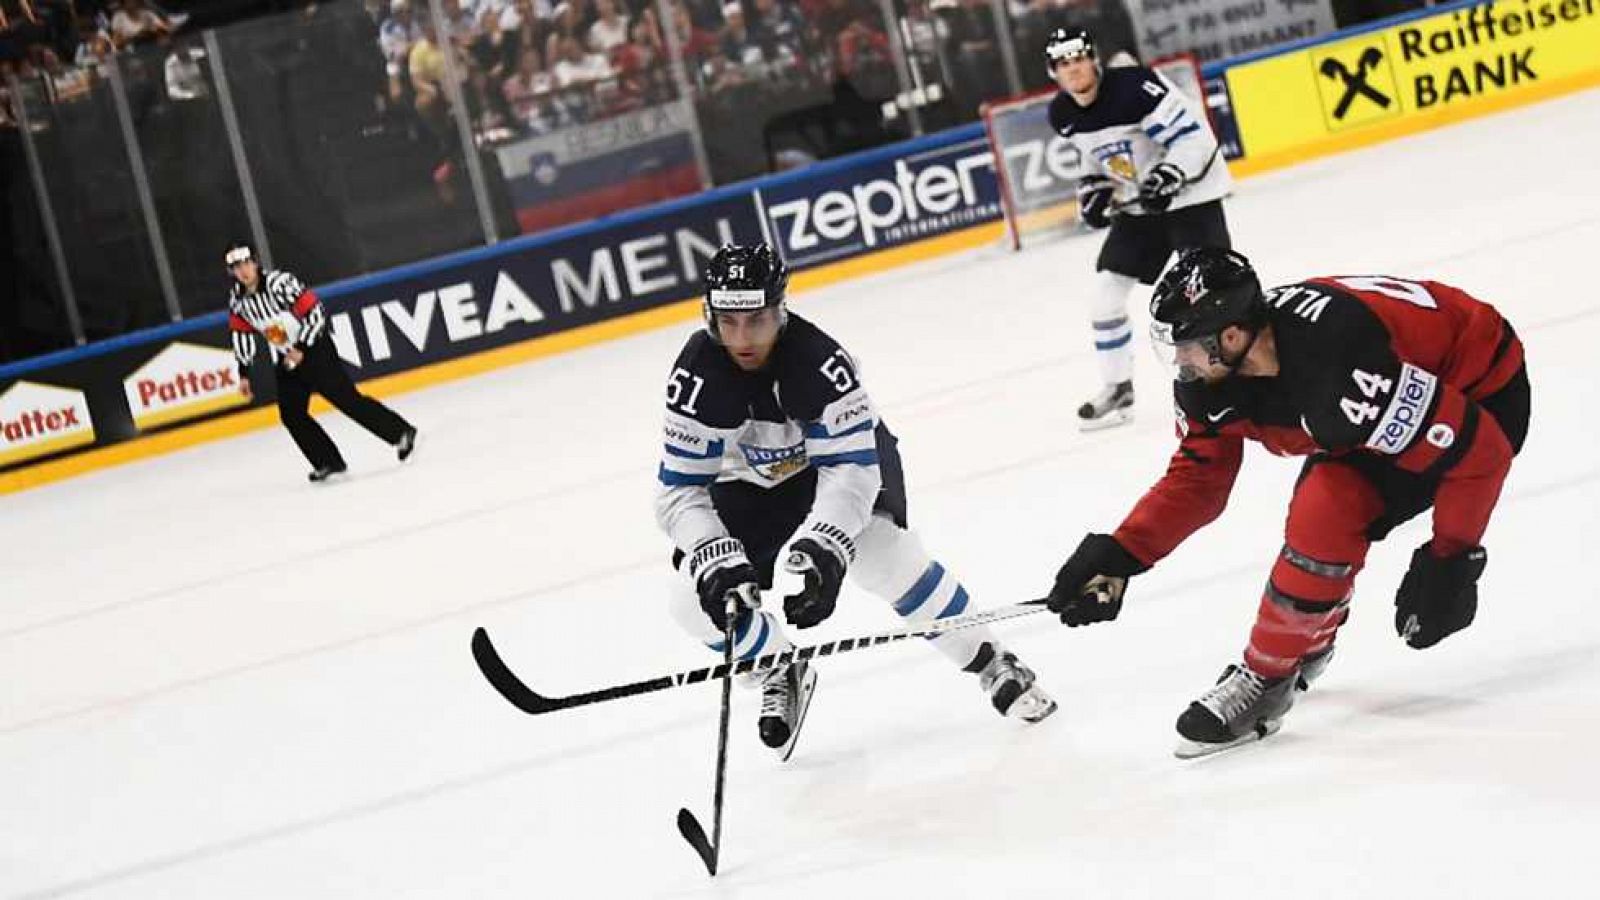 Hockey Hielo - Campeonato del Mundo Masculino 2017: Canadá-Finlandia